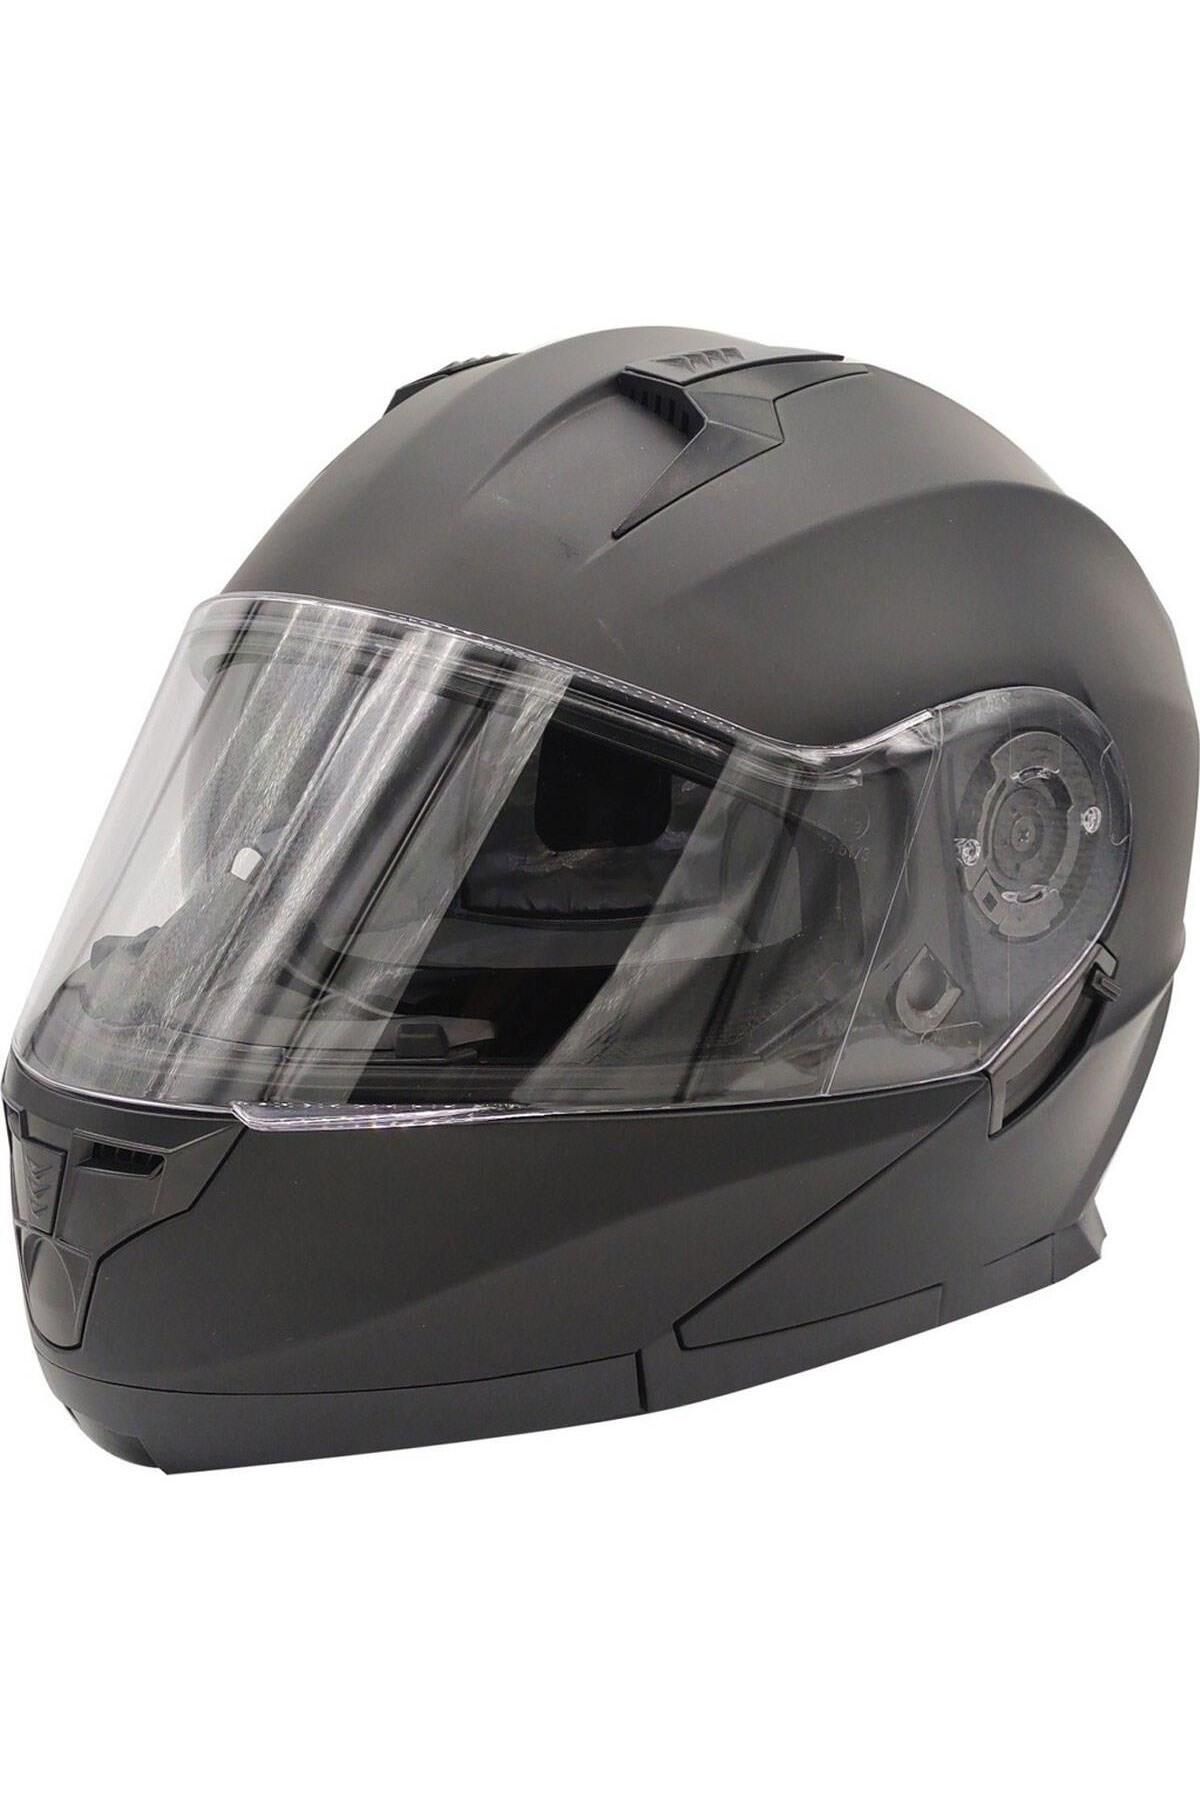 Free-M Pro Helmets Vınz 162 Çene Açılır Motosiklet Kaskı